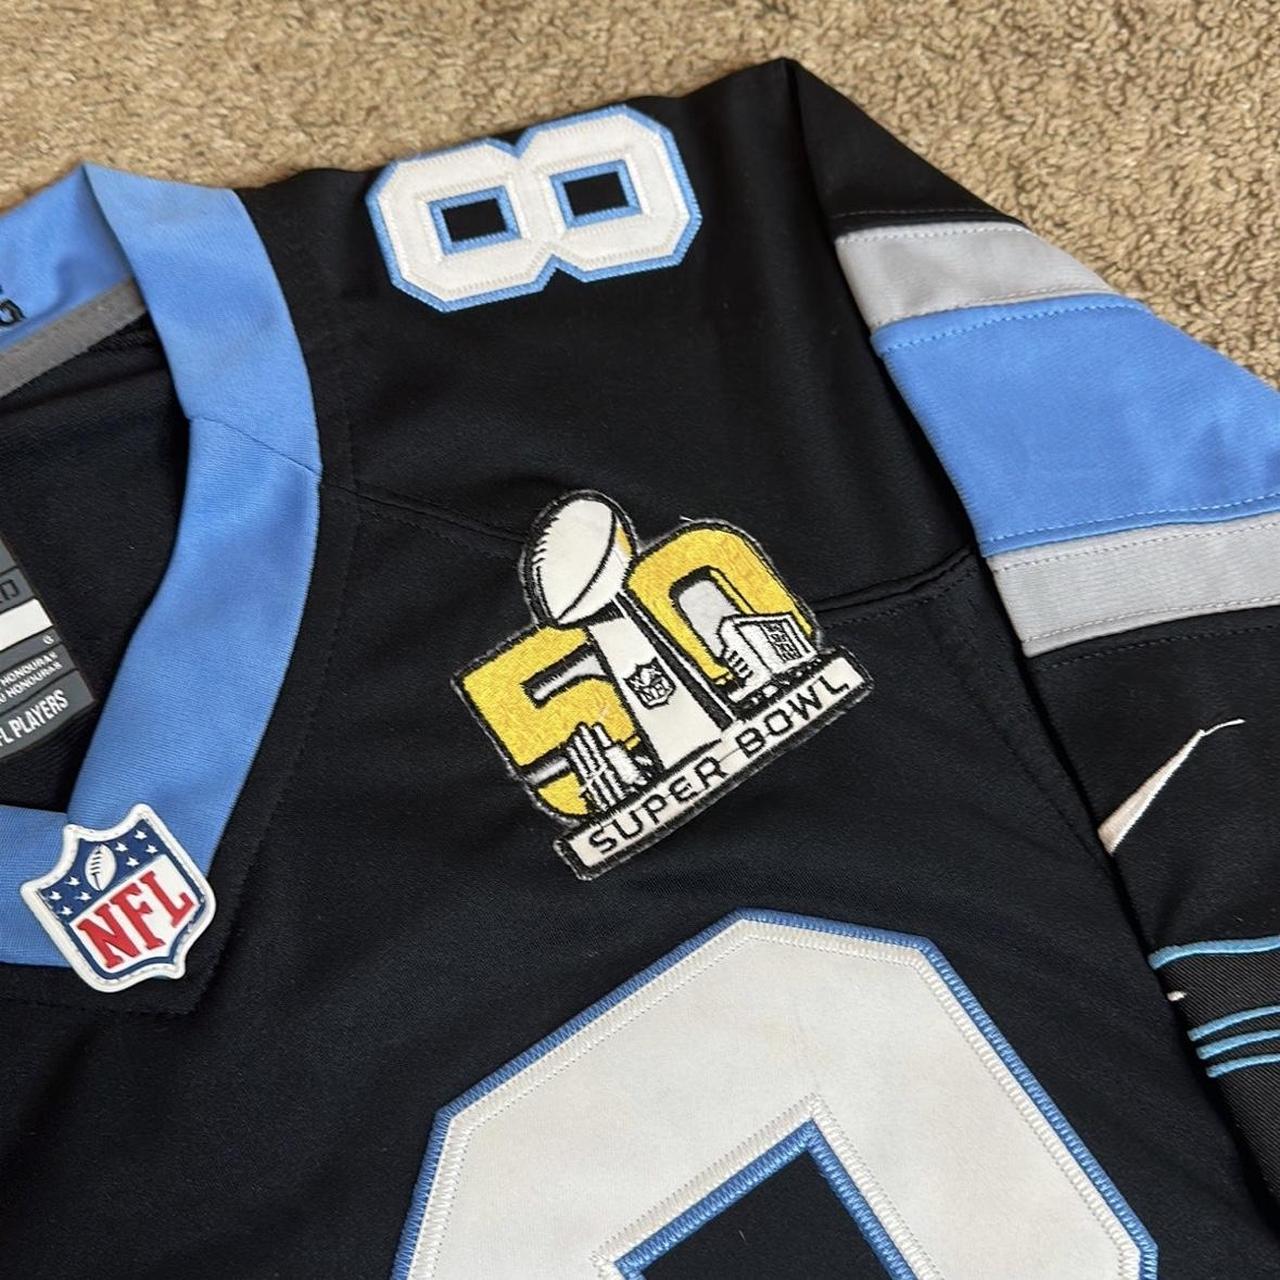 Nike Carolina Panthers Super Bowl 50 And NFC Champions Shirts - Size Medium